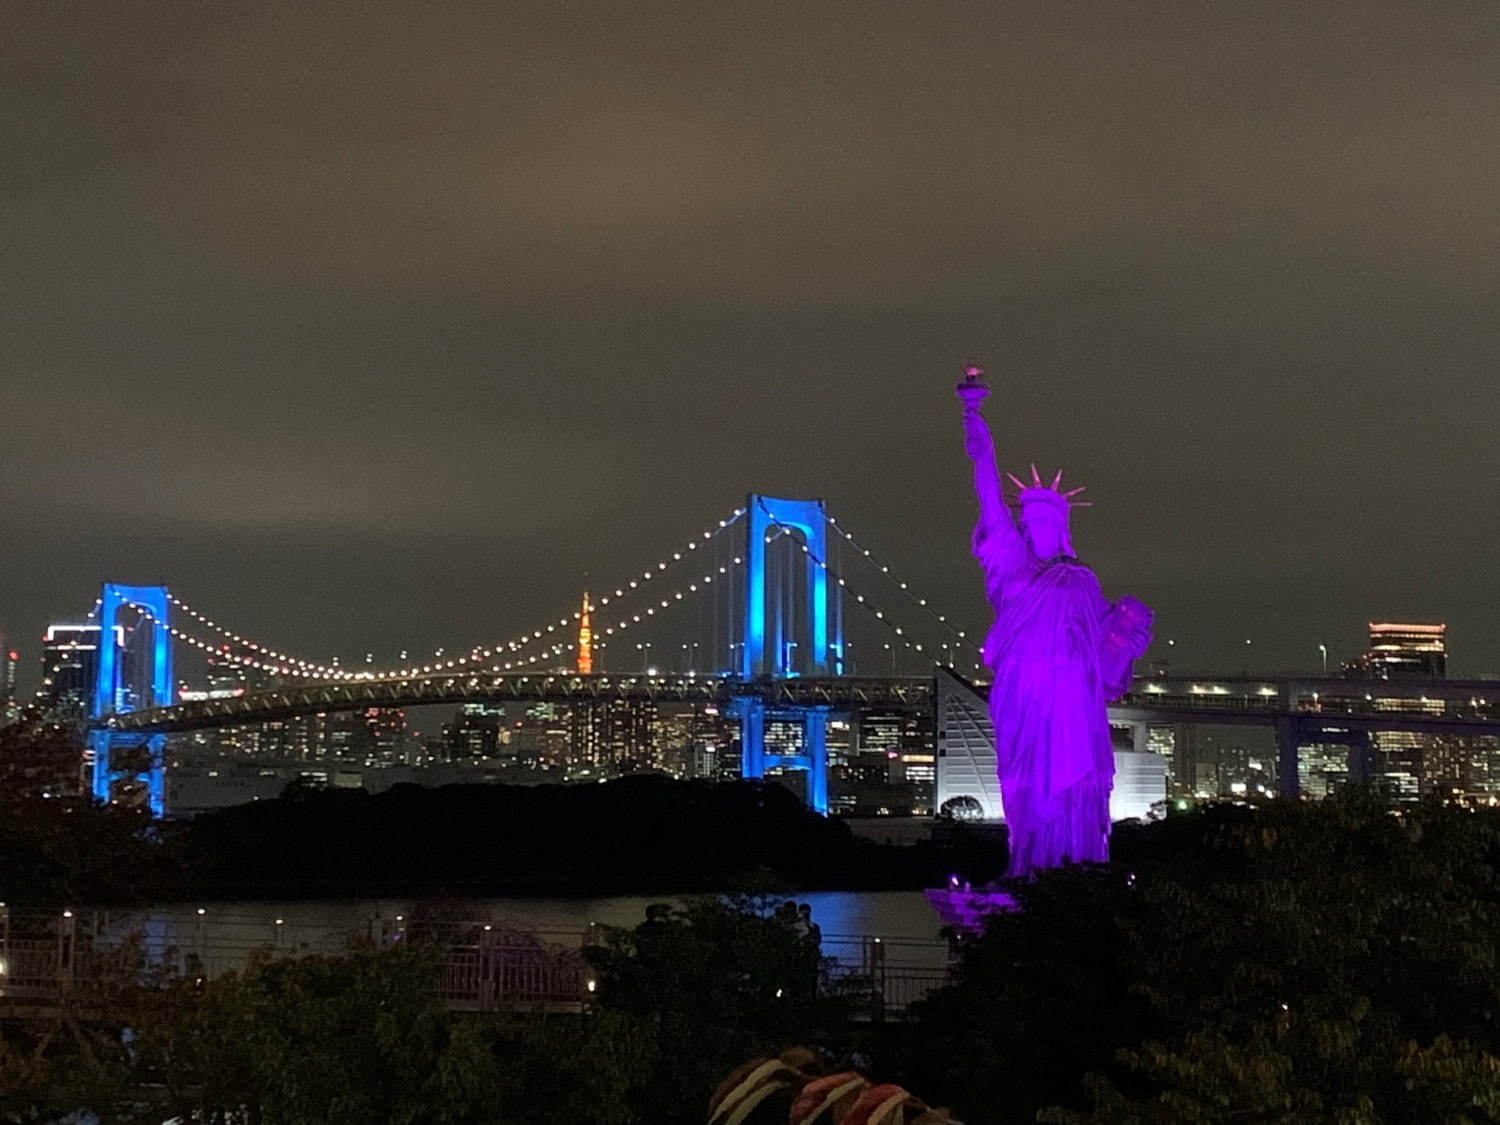 「イルミネーションアイランドお台場 2020」東京湾の夜景×大規模ライトアップ